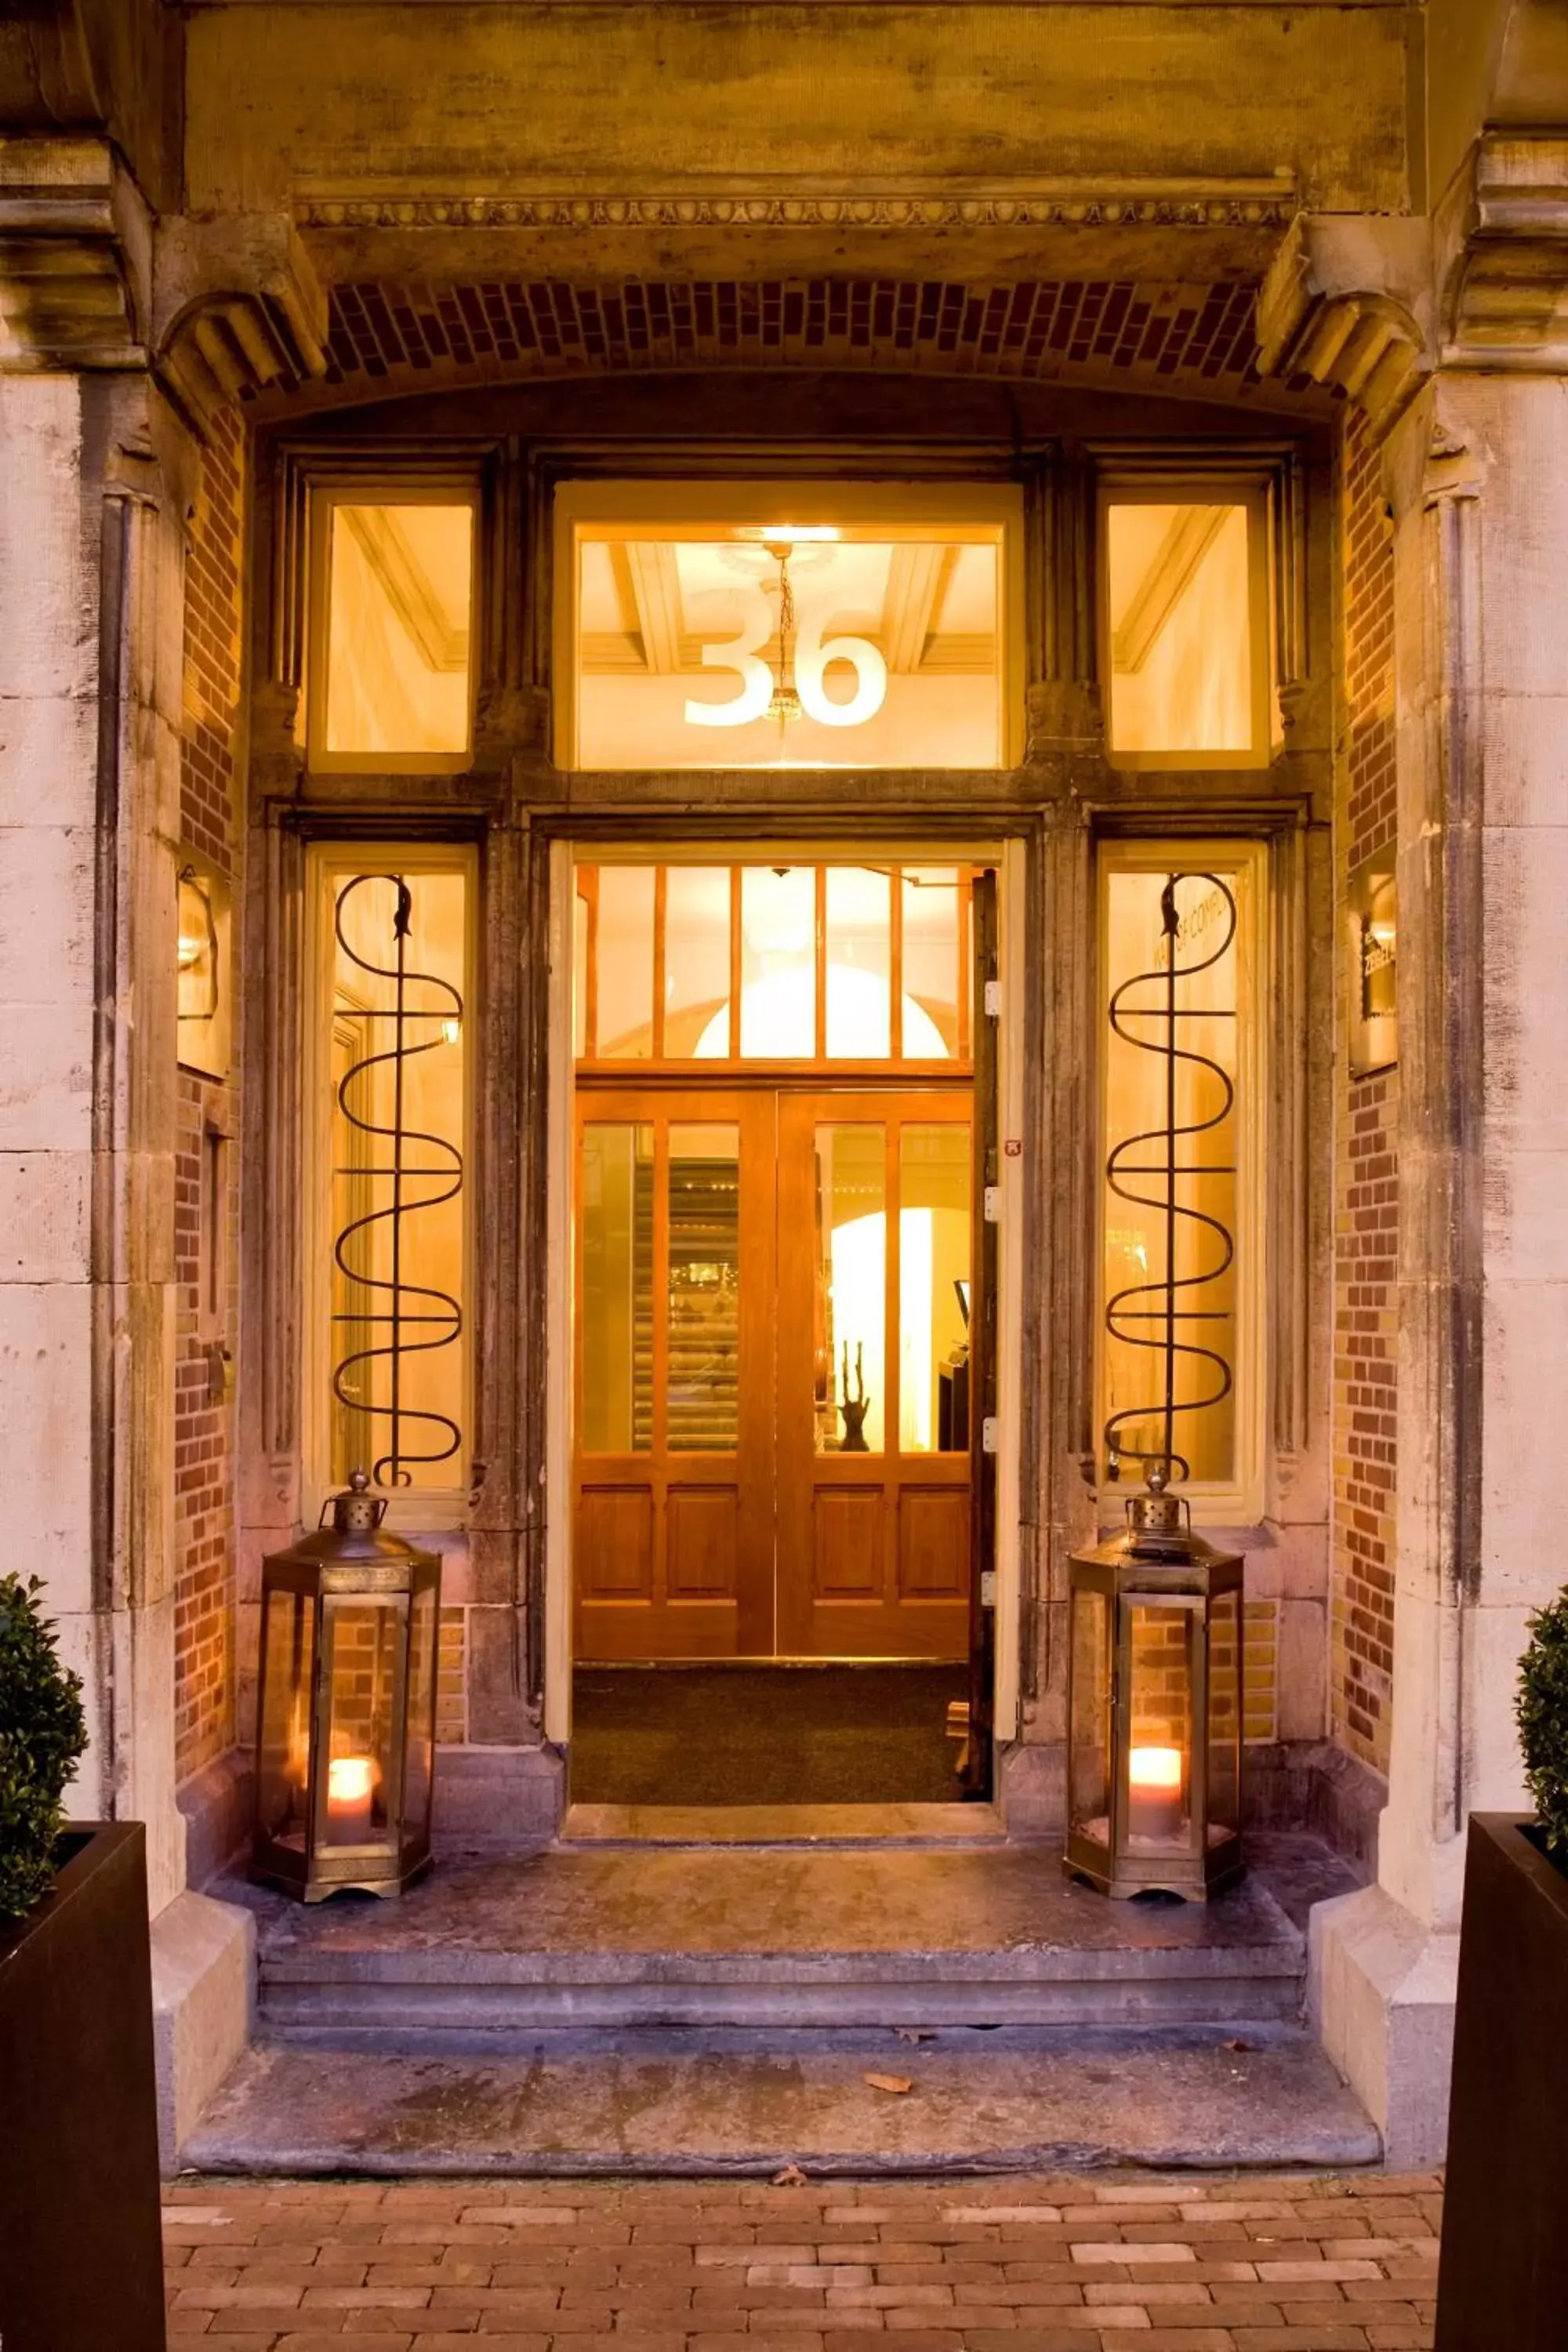 Facade/Entrance in Grand Hotel Alkmaar